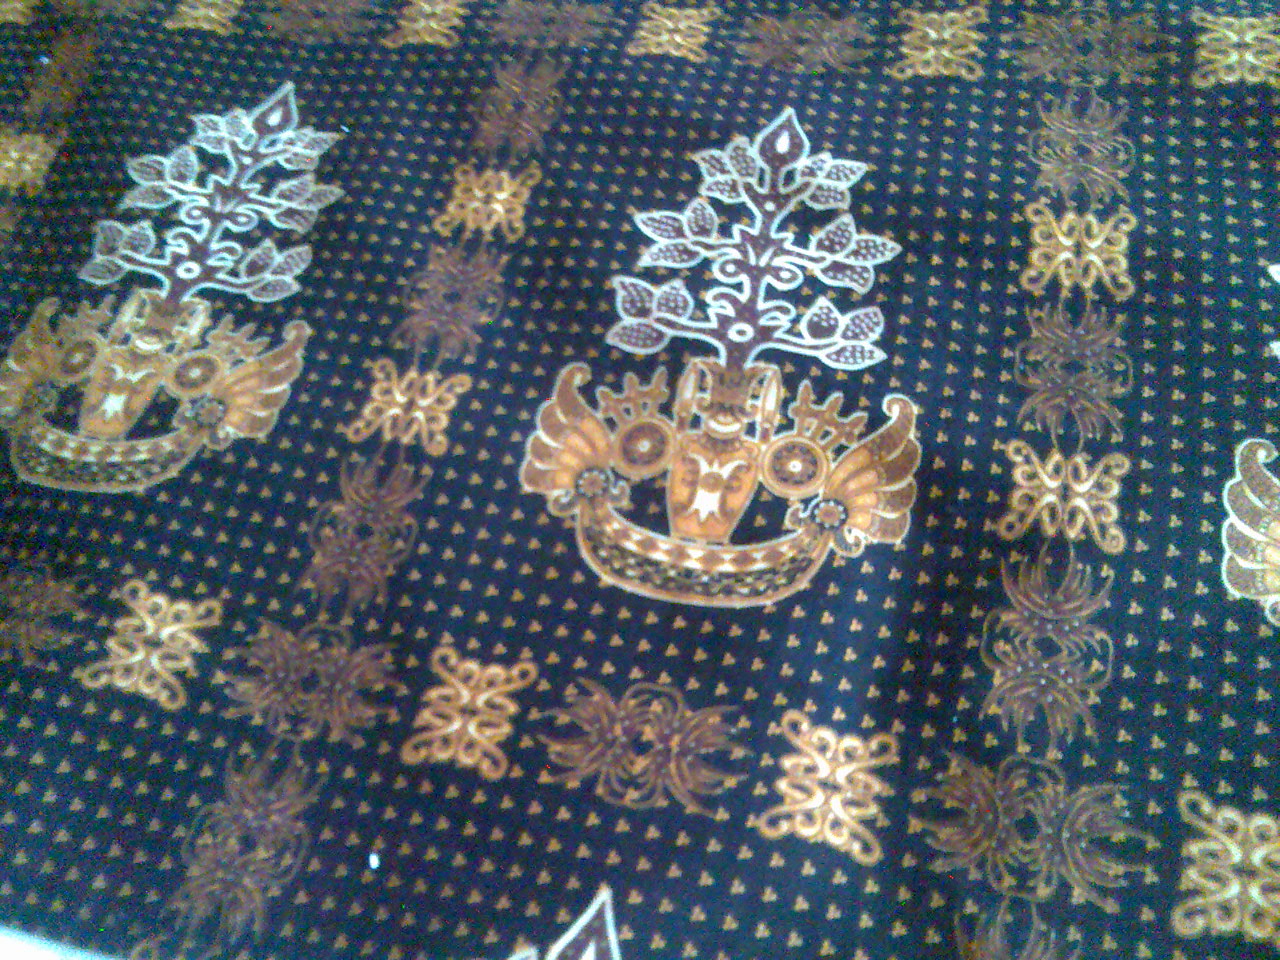  Batik  Batang Garing khas Kalimantan  Tengah  My Poetry